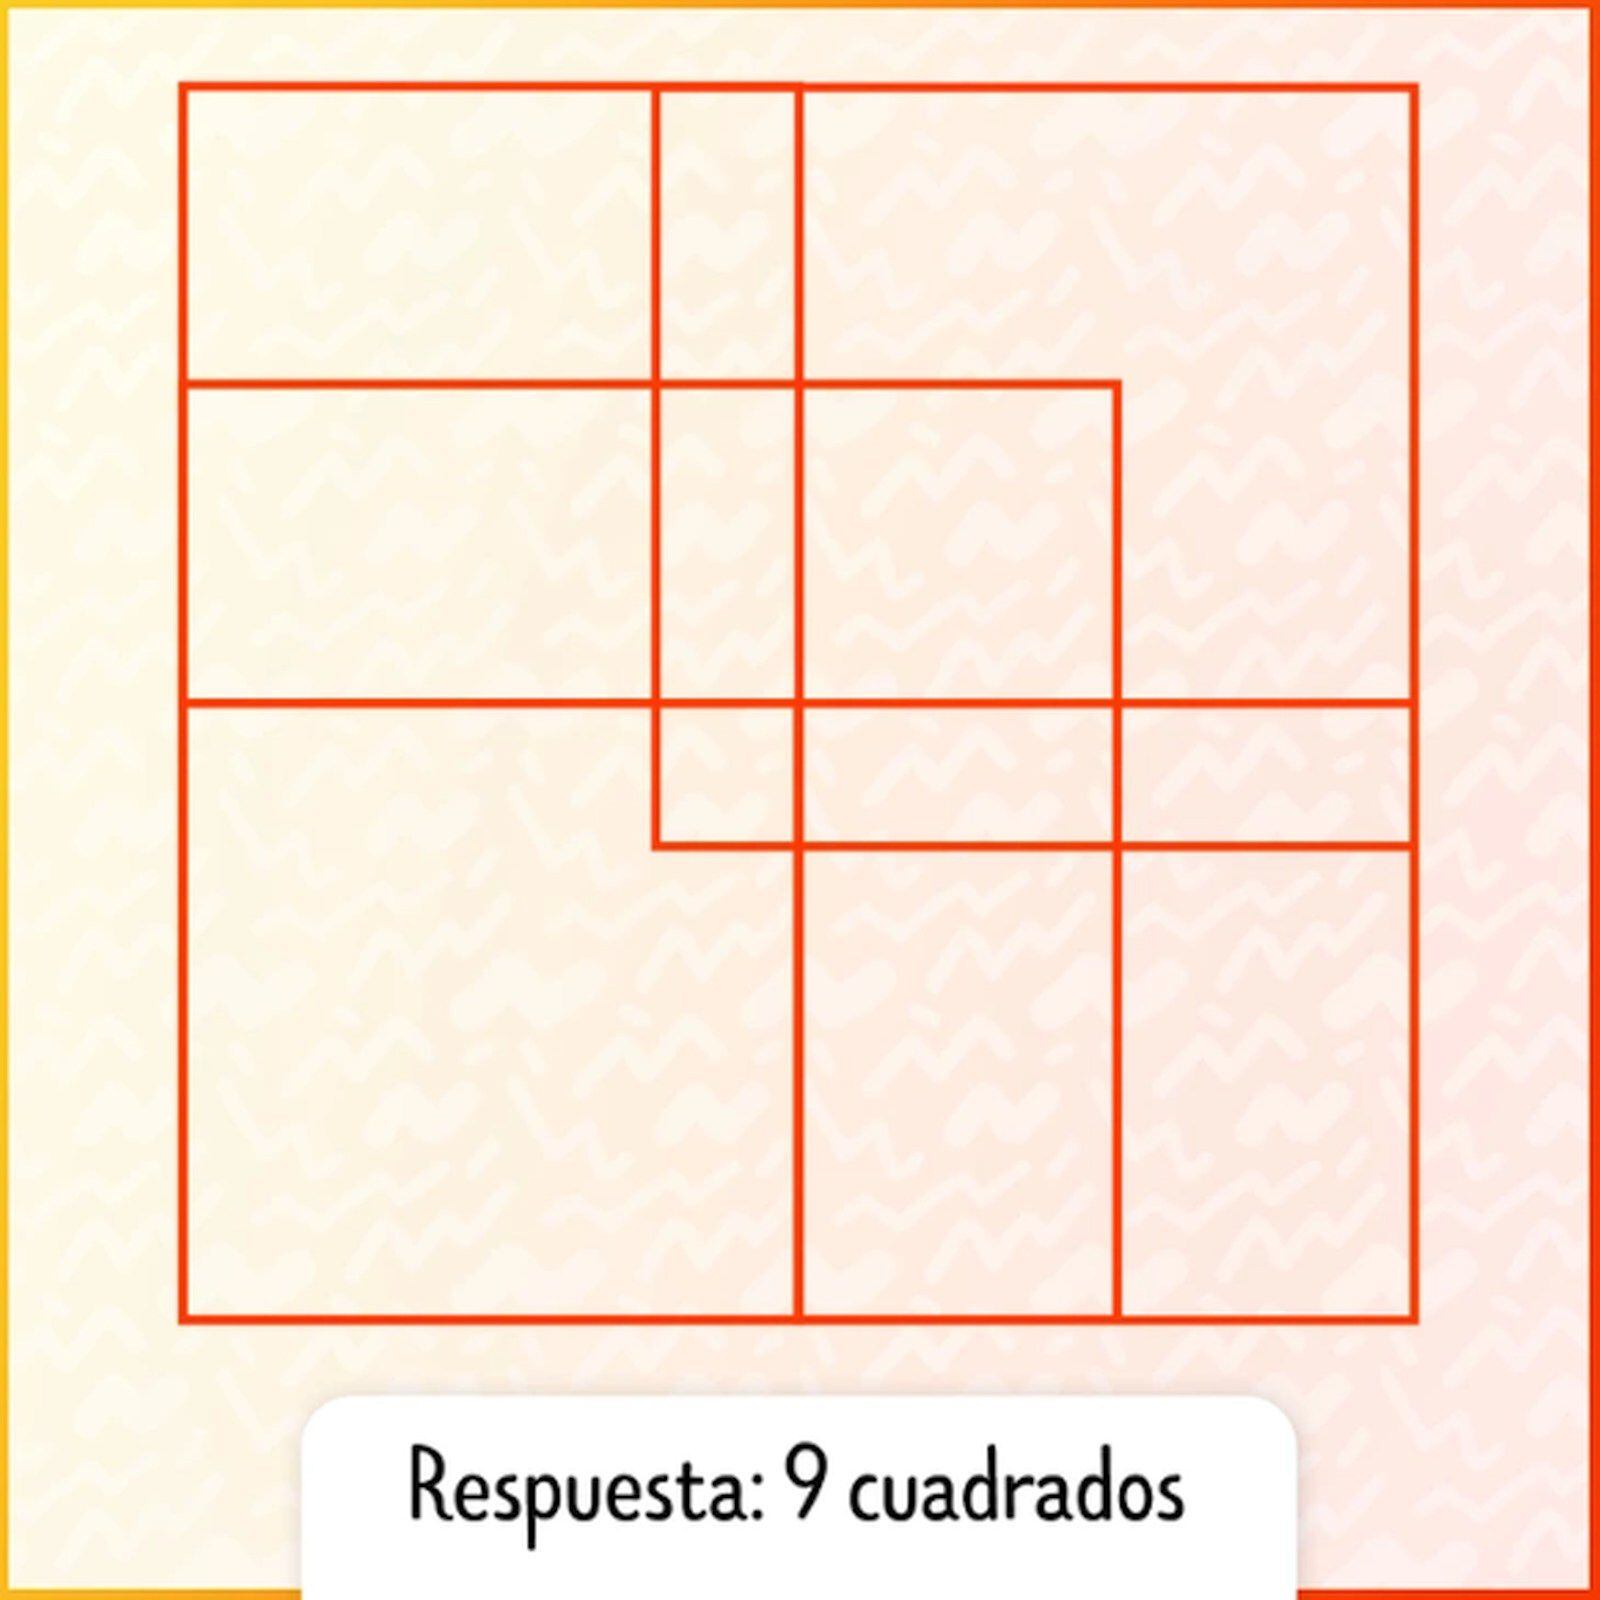 RETO VISUAL | En esta imagen se indica la cantidad exacta de cuadrados. (Foto: genial.guru)